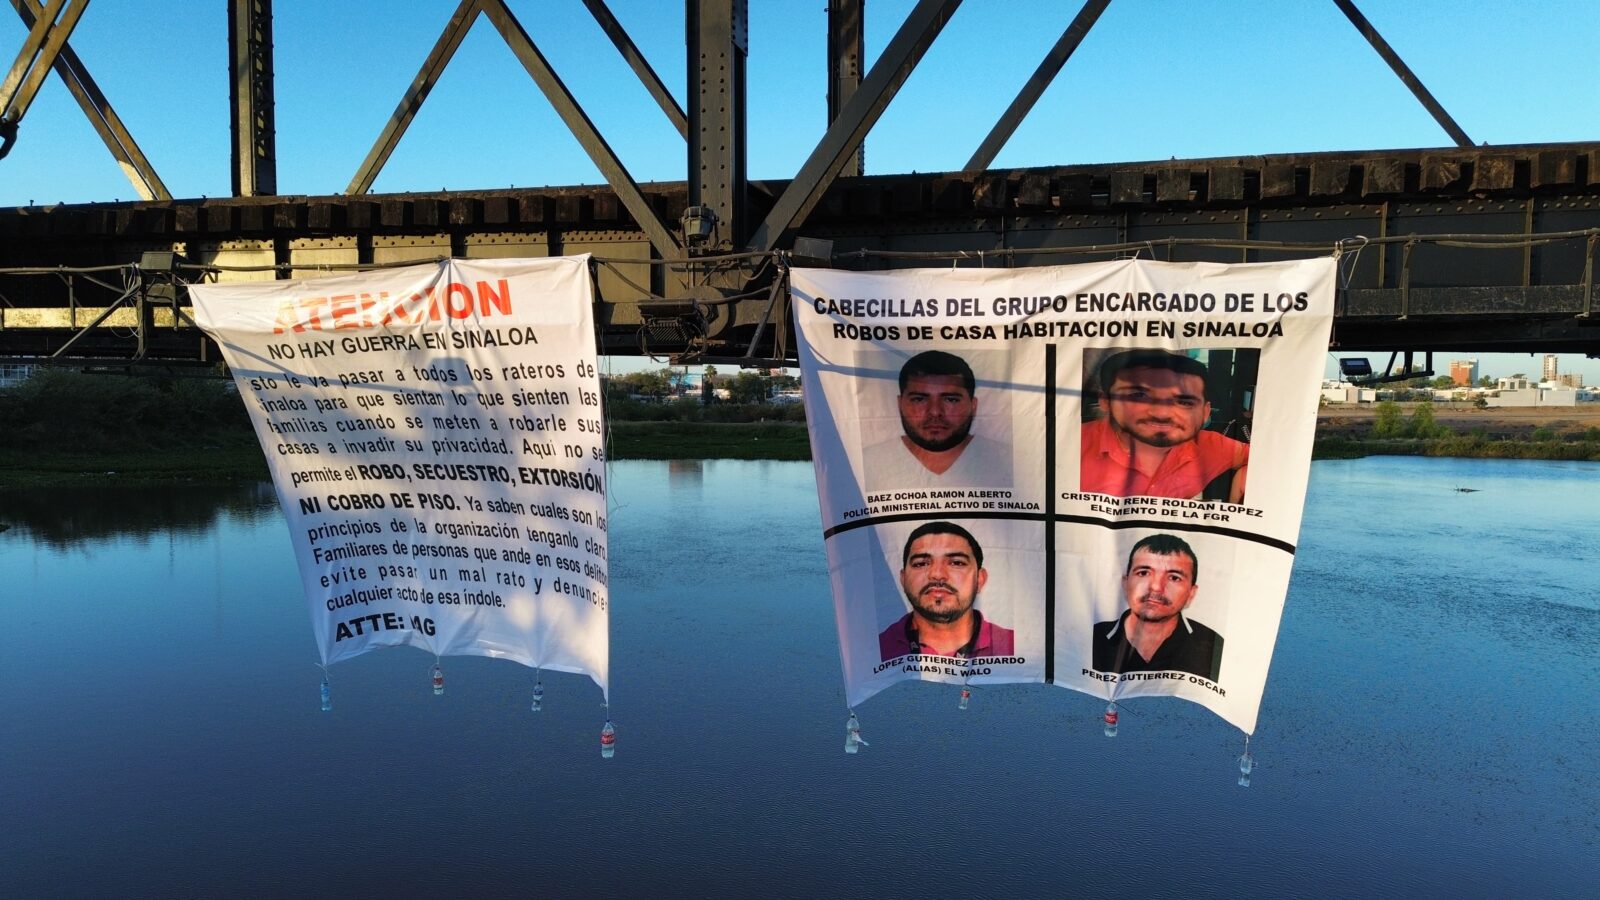 Aparecen narcomantas "no hay guerra en Sinaloa", por todo Culiacán tras levantones de familias